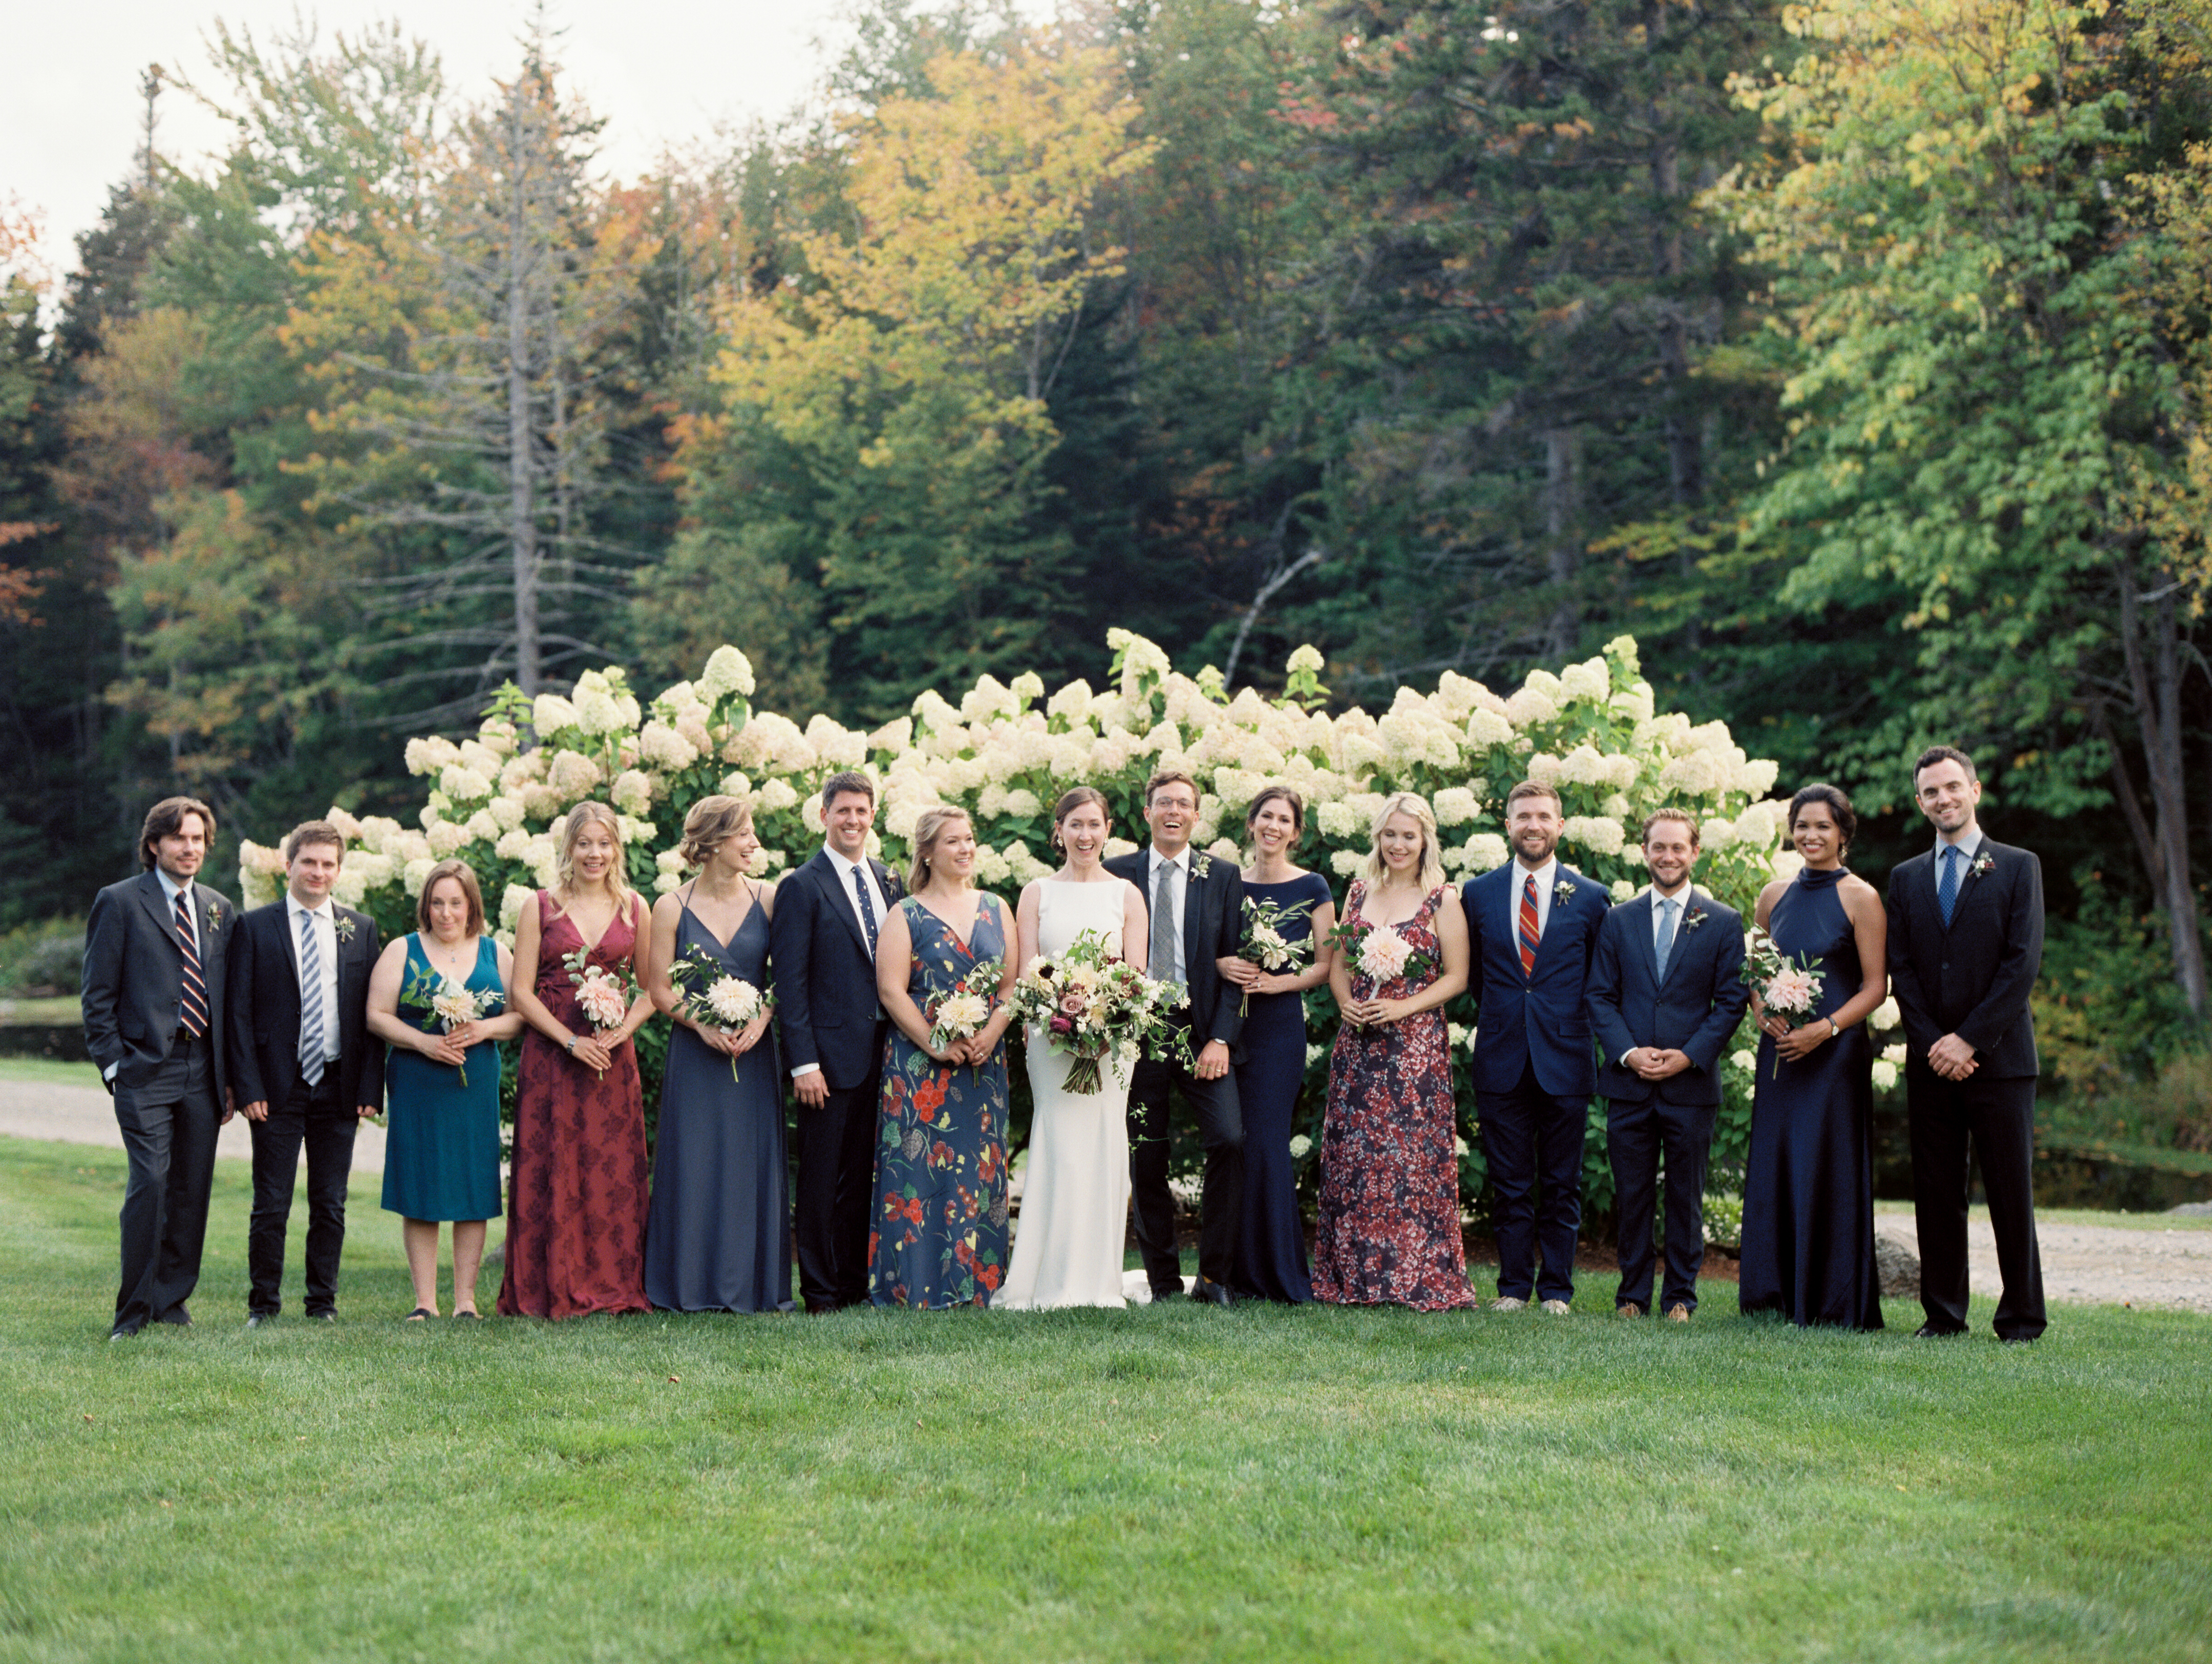 Pretty Post: Meaghen & Loren Hermitage Inn Classic Vermont Wedding